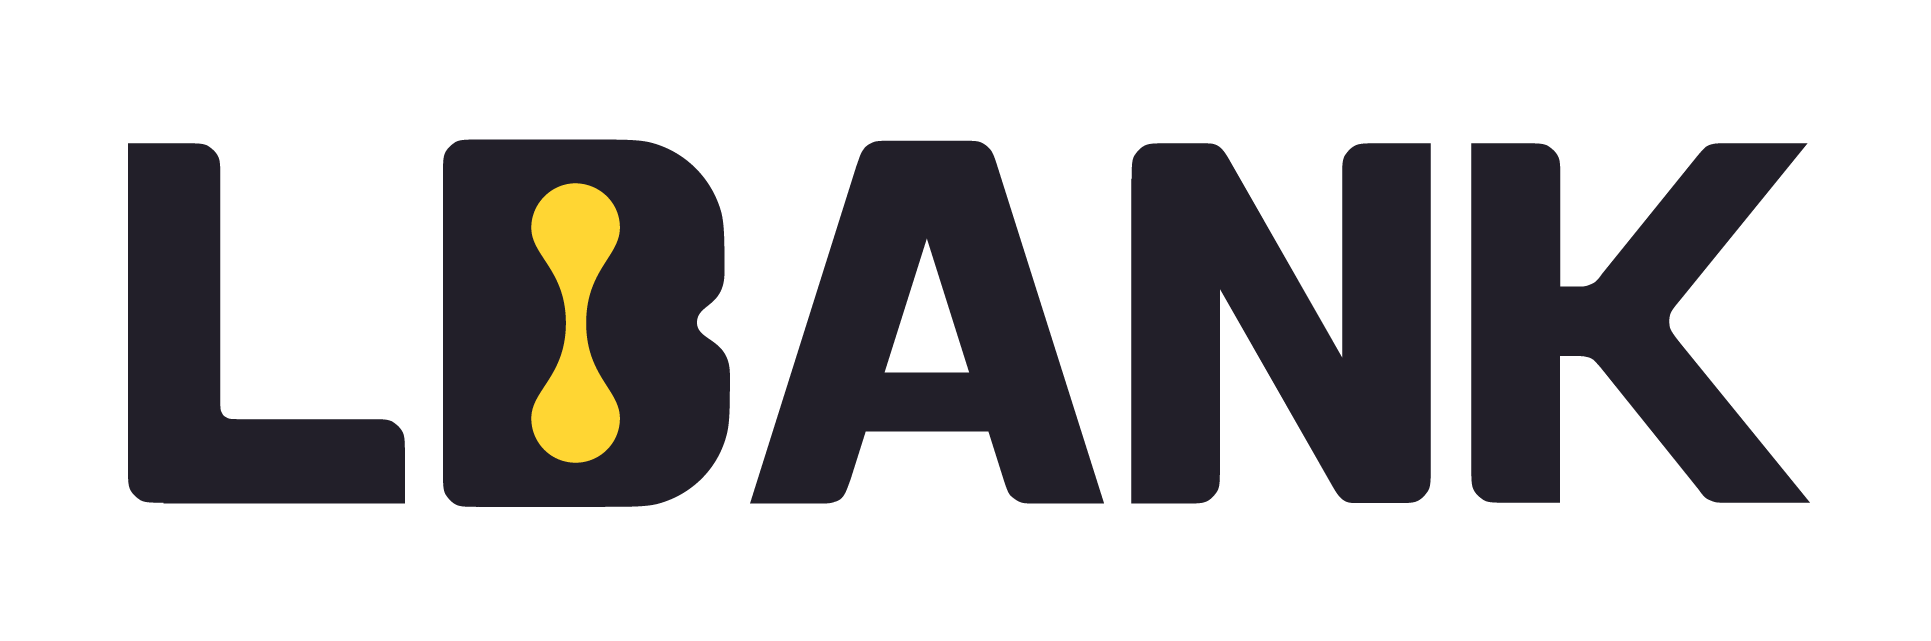 Lbank_logo